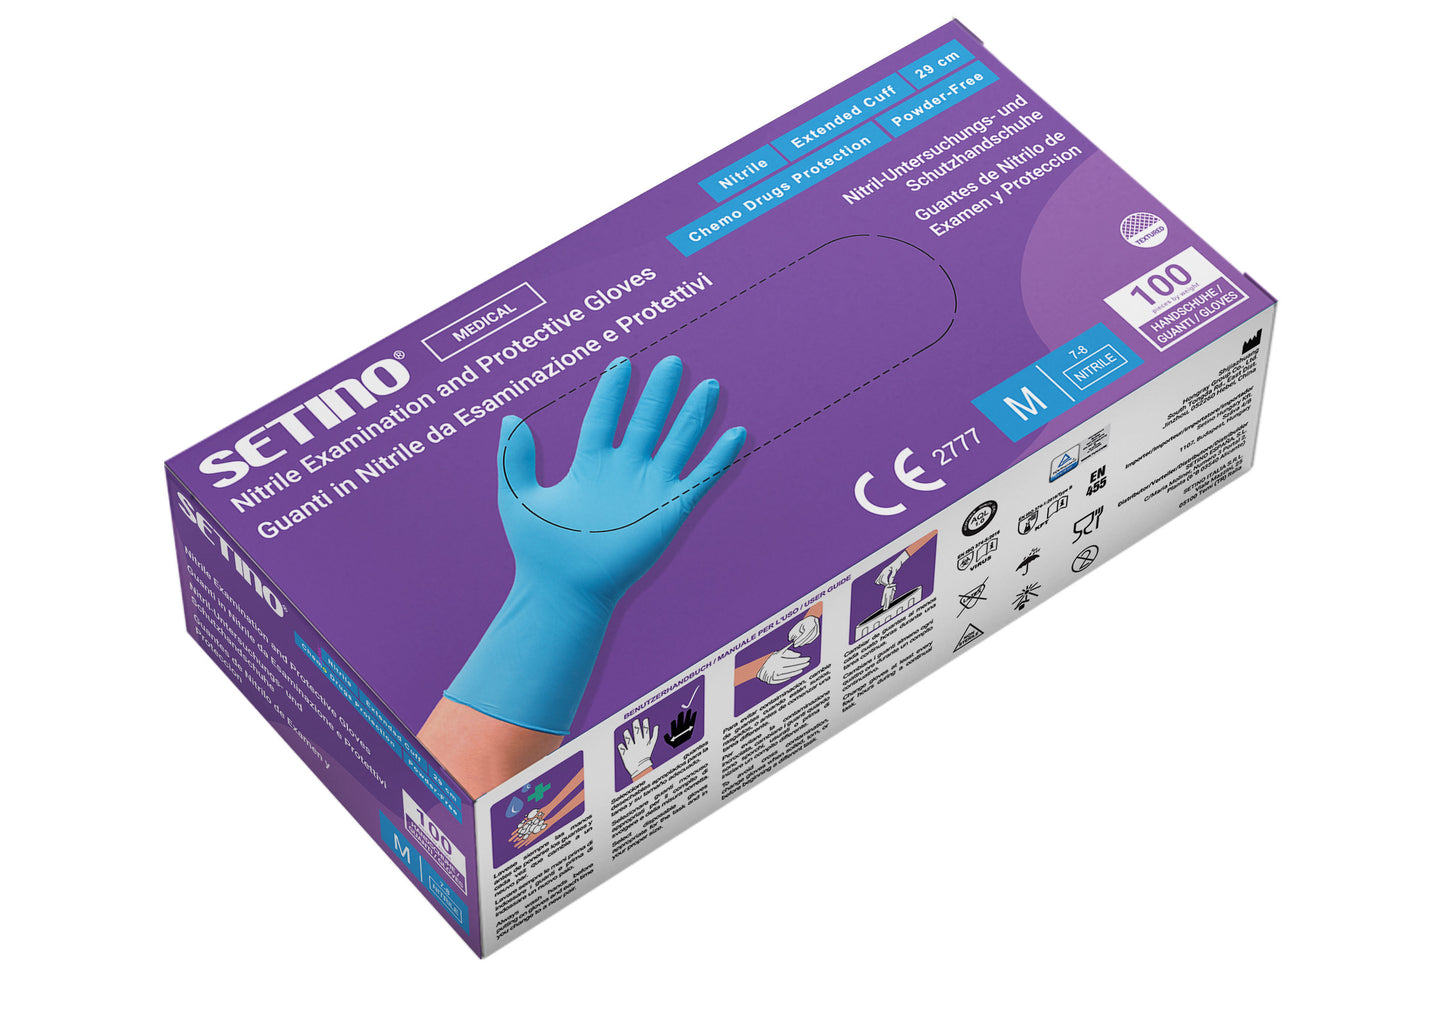 NPF2001-2005 29-сантиметрова нитрилна ръкавица за изследване и защита без прах, синя 5,5 грама